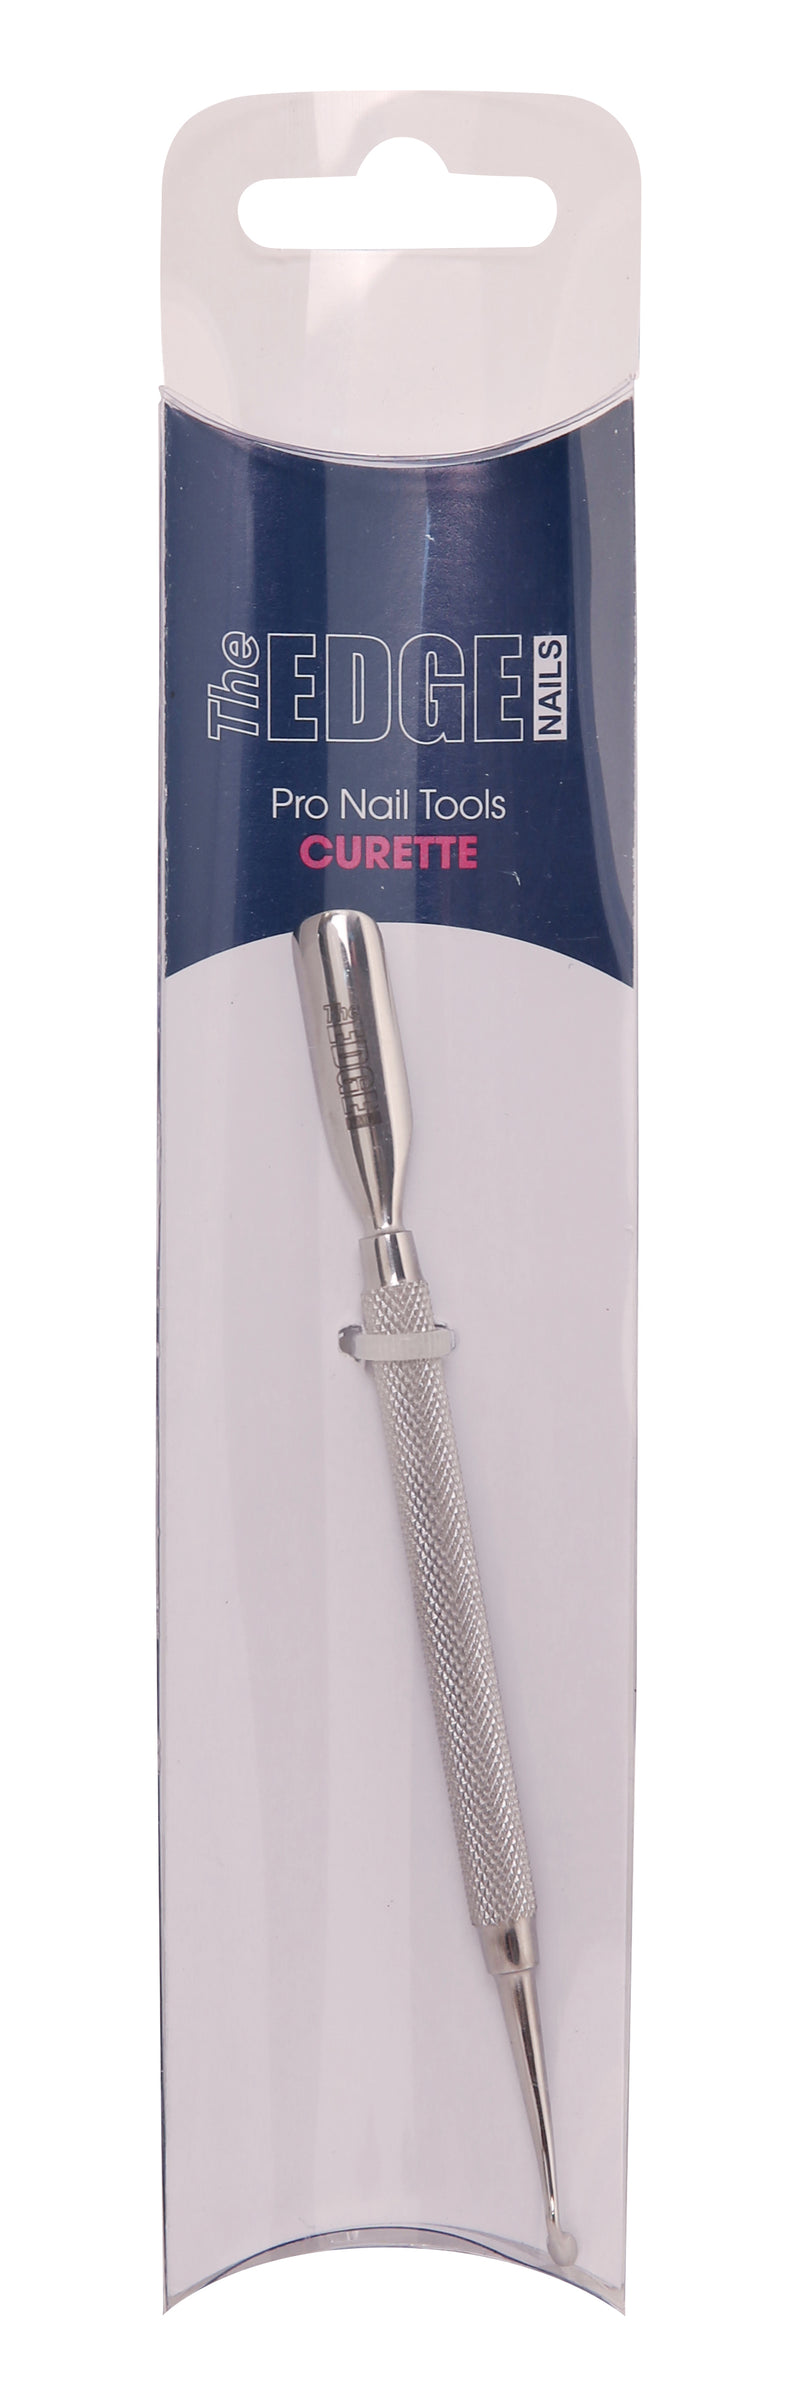 Curette Manicure Tool